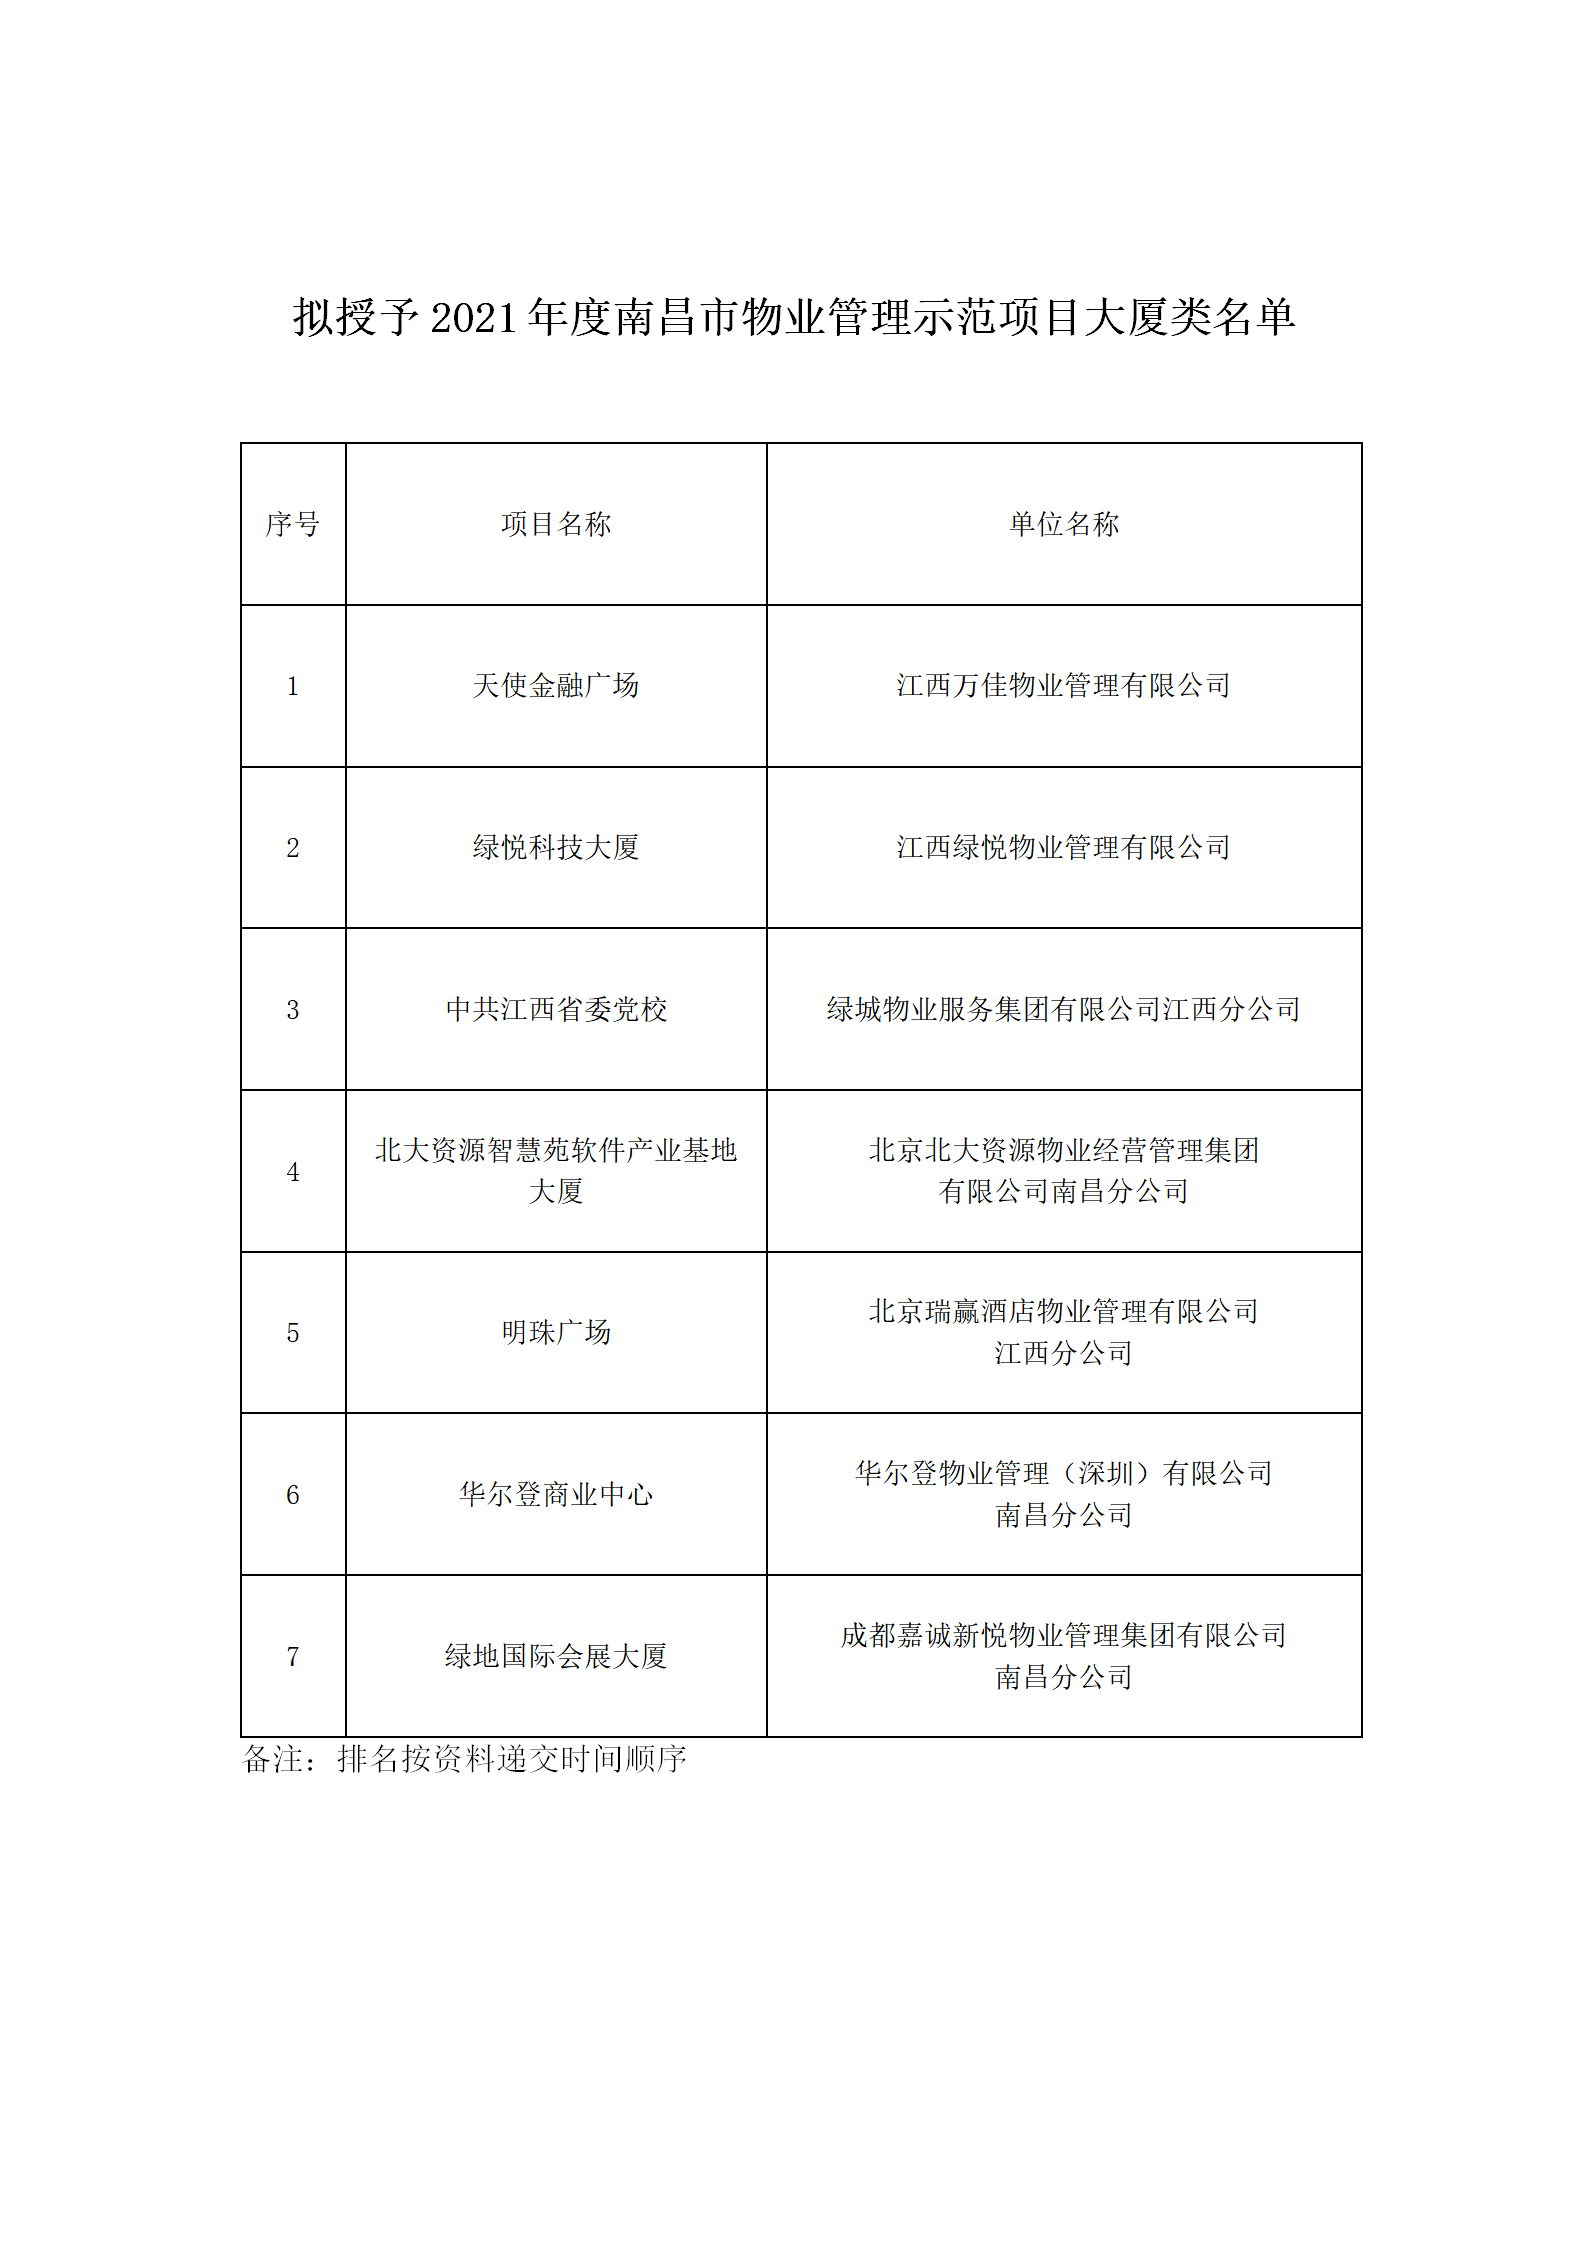 拟授予2021年度南昌市物业管理示范项目大厦类名单_01.png